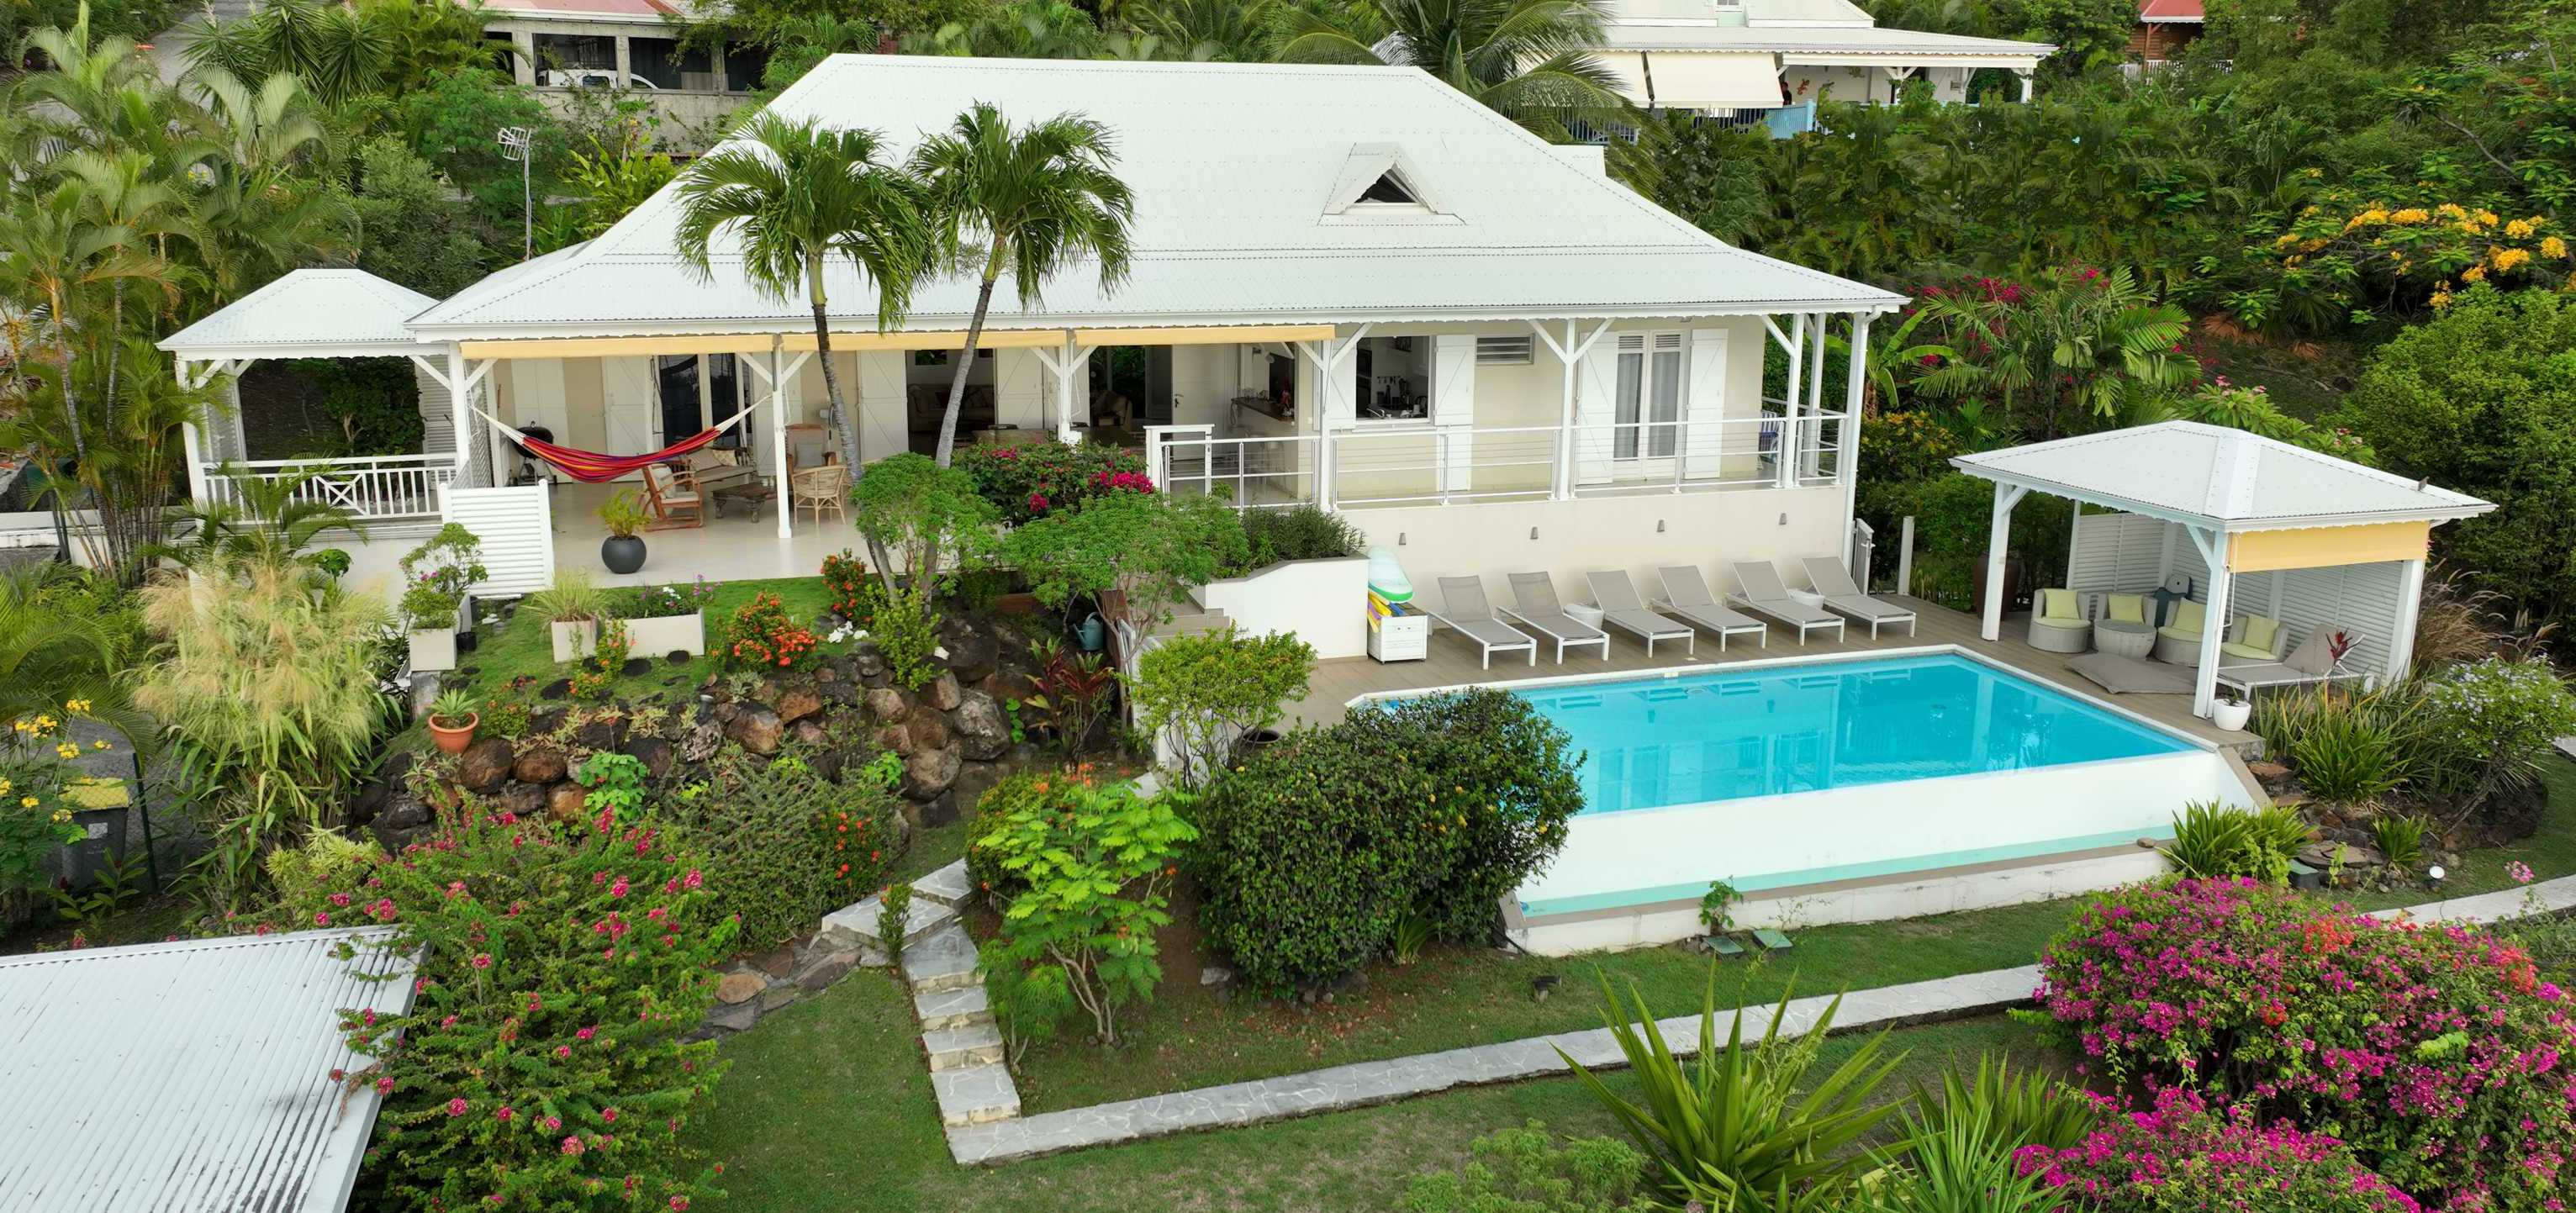 Villa haut de gamme, superbe piscine privée, vue mer à couper le souffle, grande terrasse...